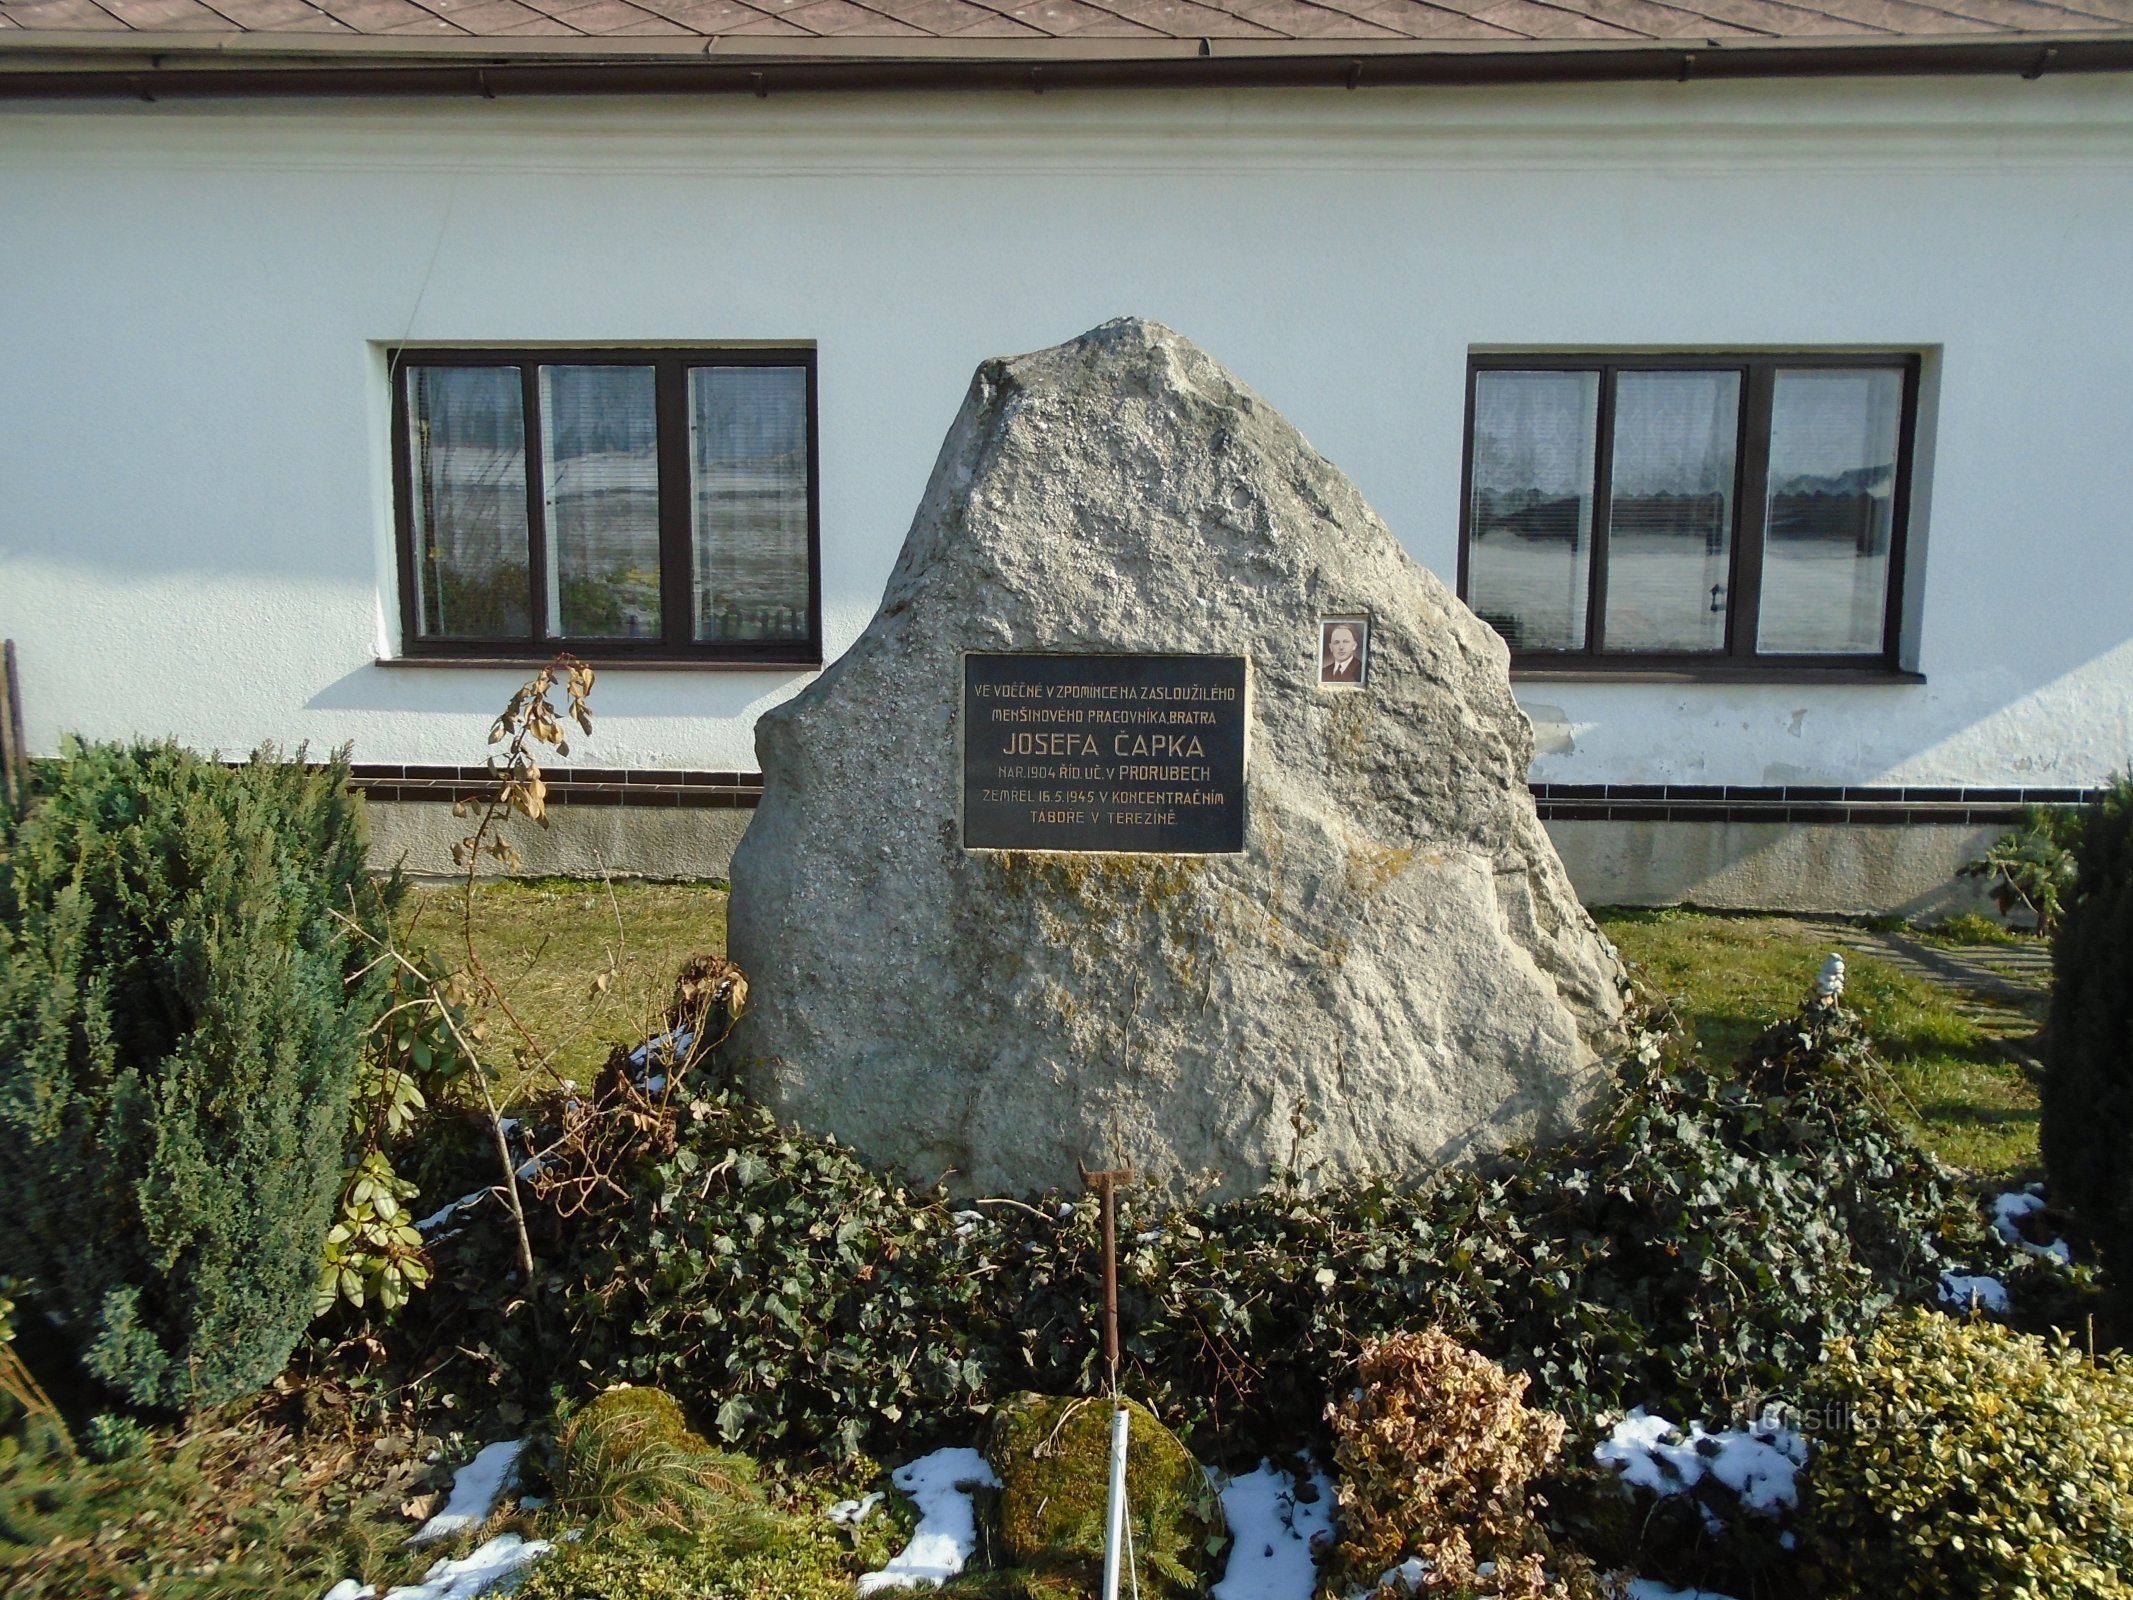 Tượng đài J. Čapek ở phía trước số 24 (Curuby)